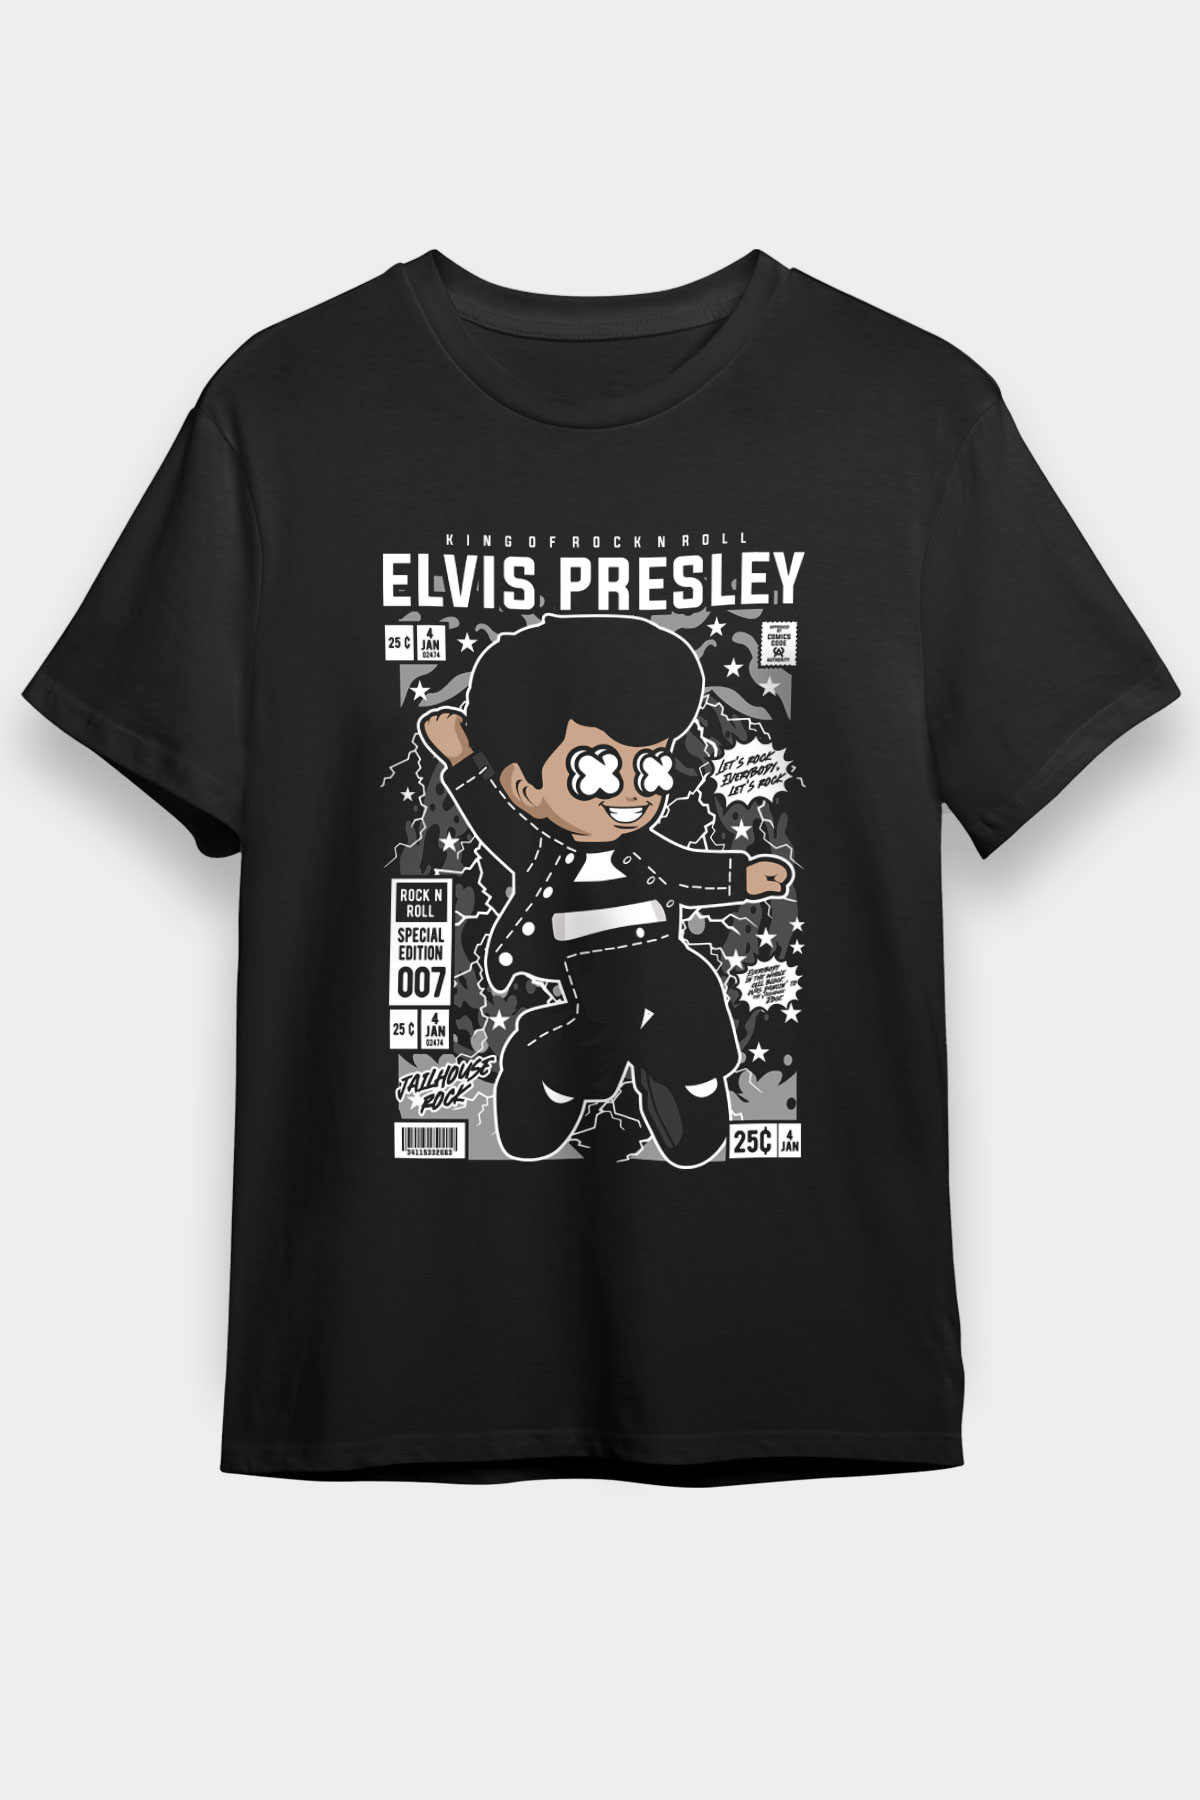 Elvis Presley T shirt, Music  Tshirt 09/